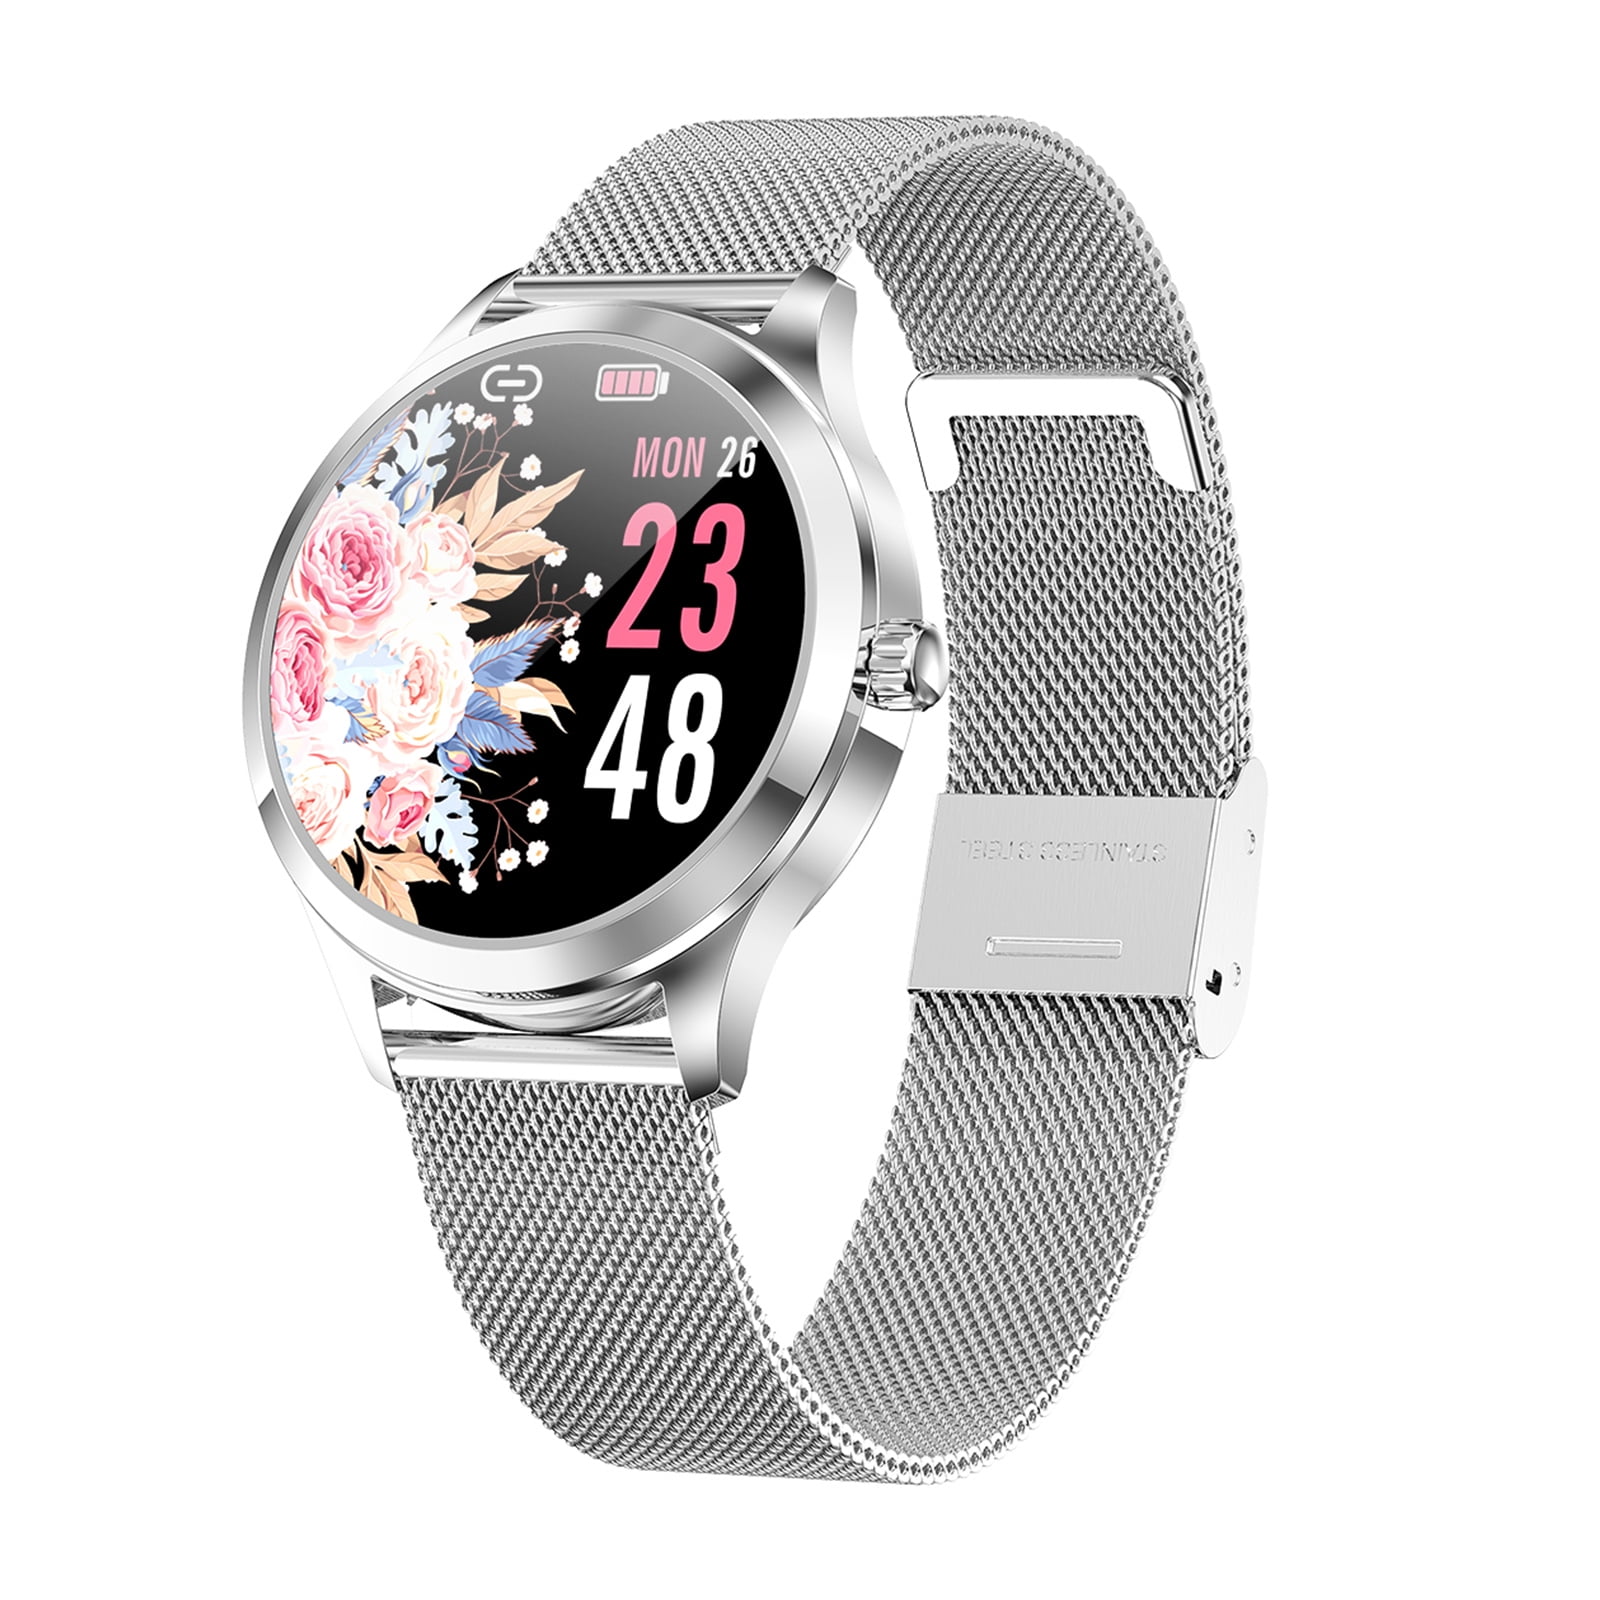 Lw07 Smartwatch on Sale, 51% OFF | www.ingeniovirtual.com